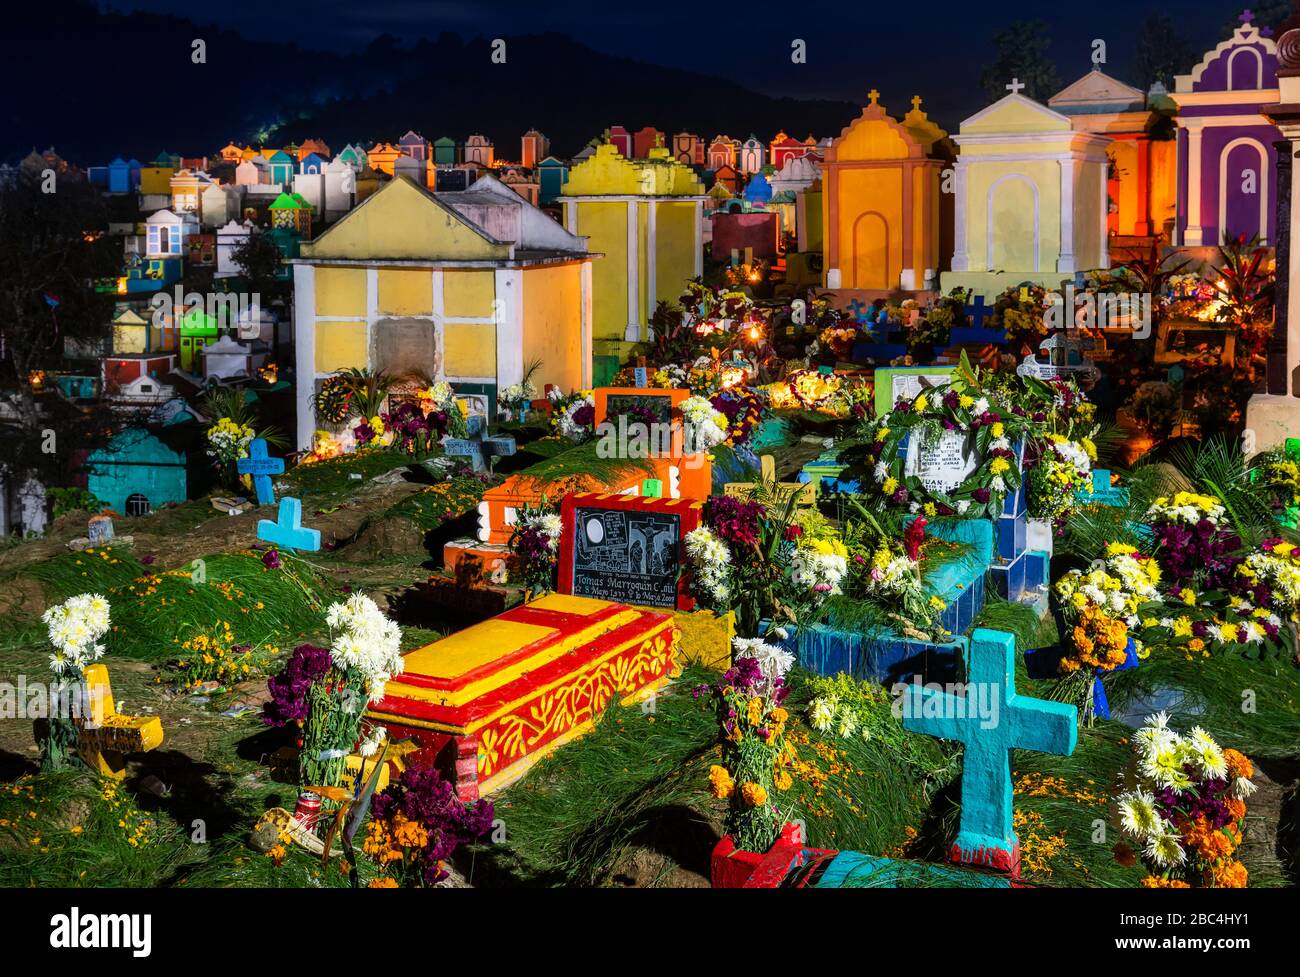 Les mausolées remplissent le cimetière unique de Chichicasenango, au Guatemala, pendant les festivités du jour des morts. Banque D'Images